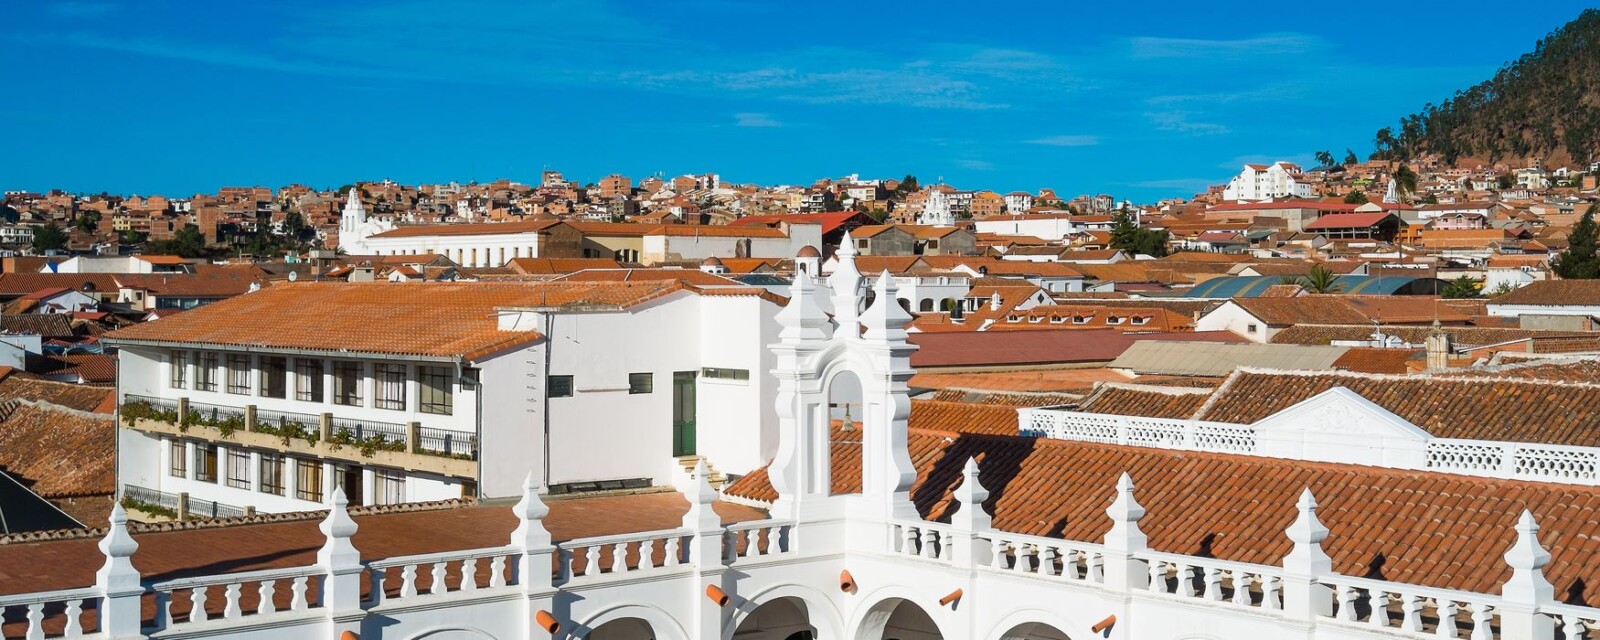 Mejores zonas donde alojarse en Sucre, Bolivia